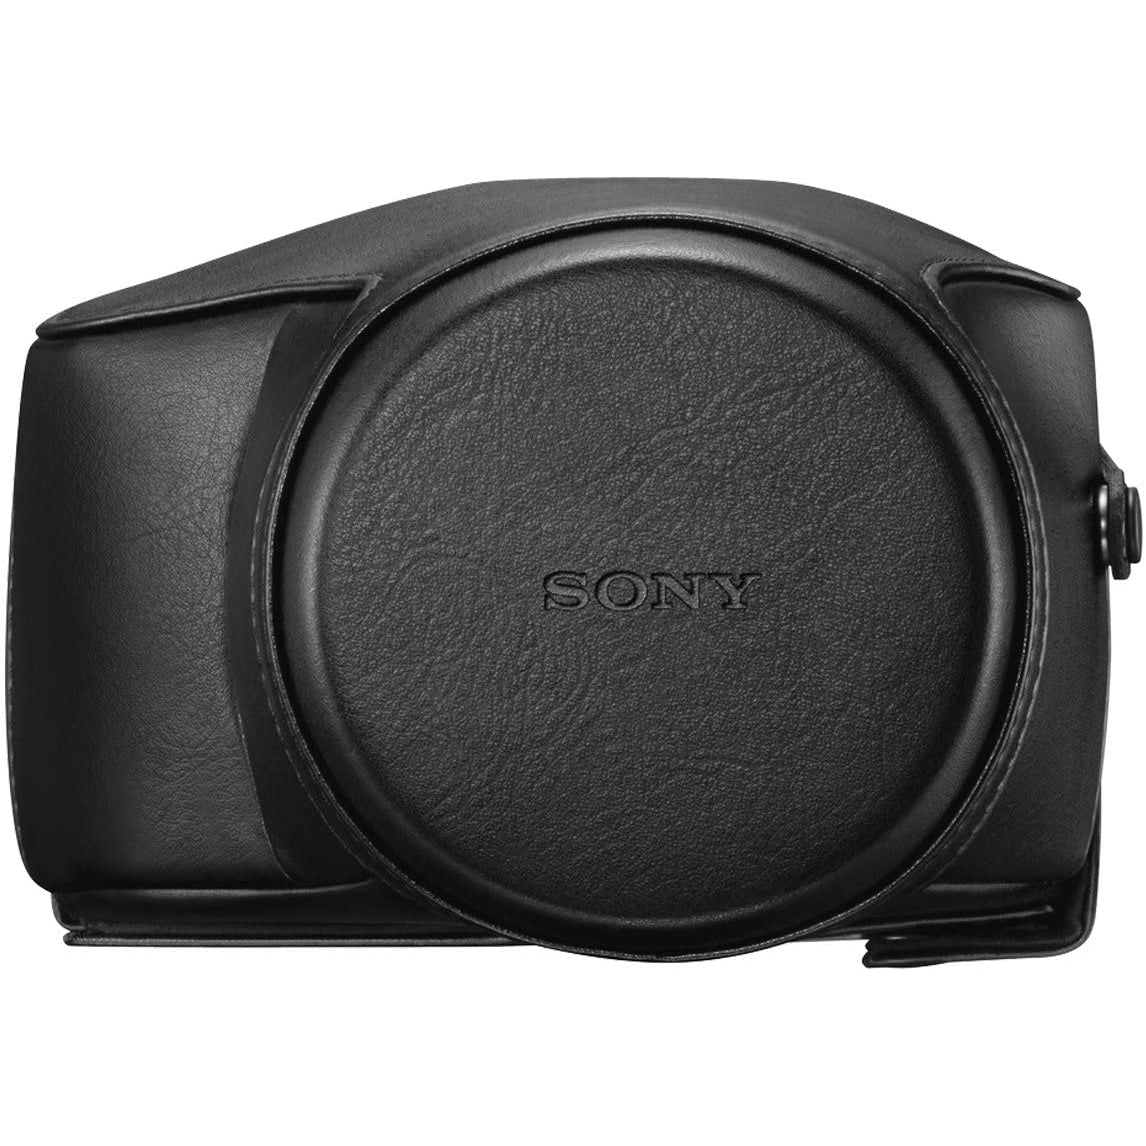 Sony Cyber-Shot Jacket Case LCJ-RXJ Protective Camera Case